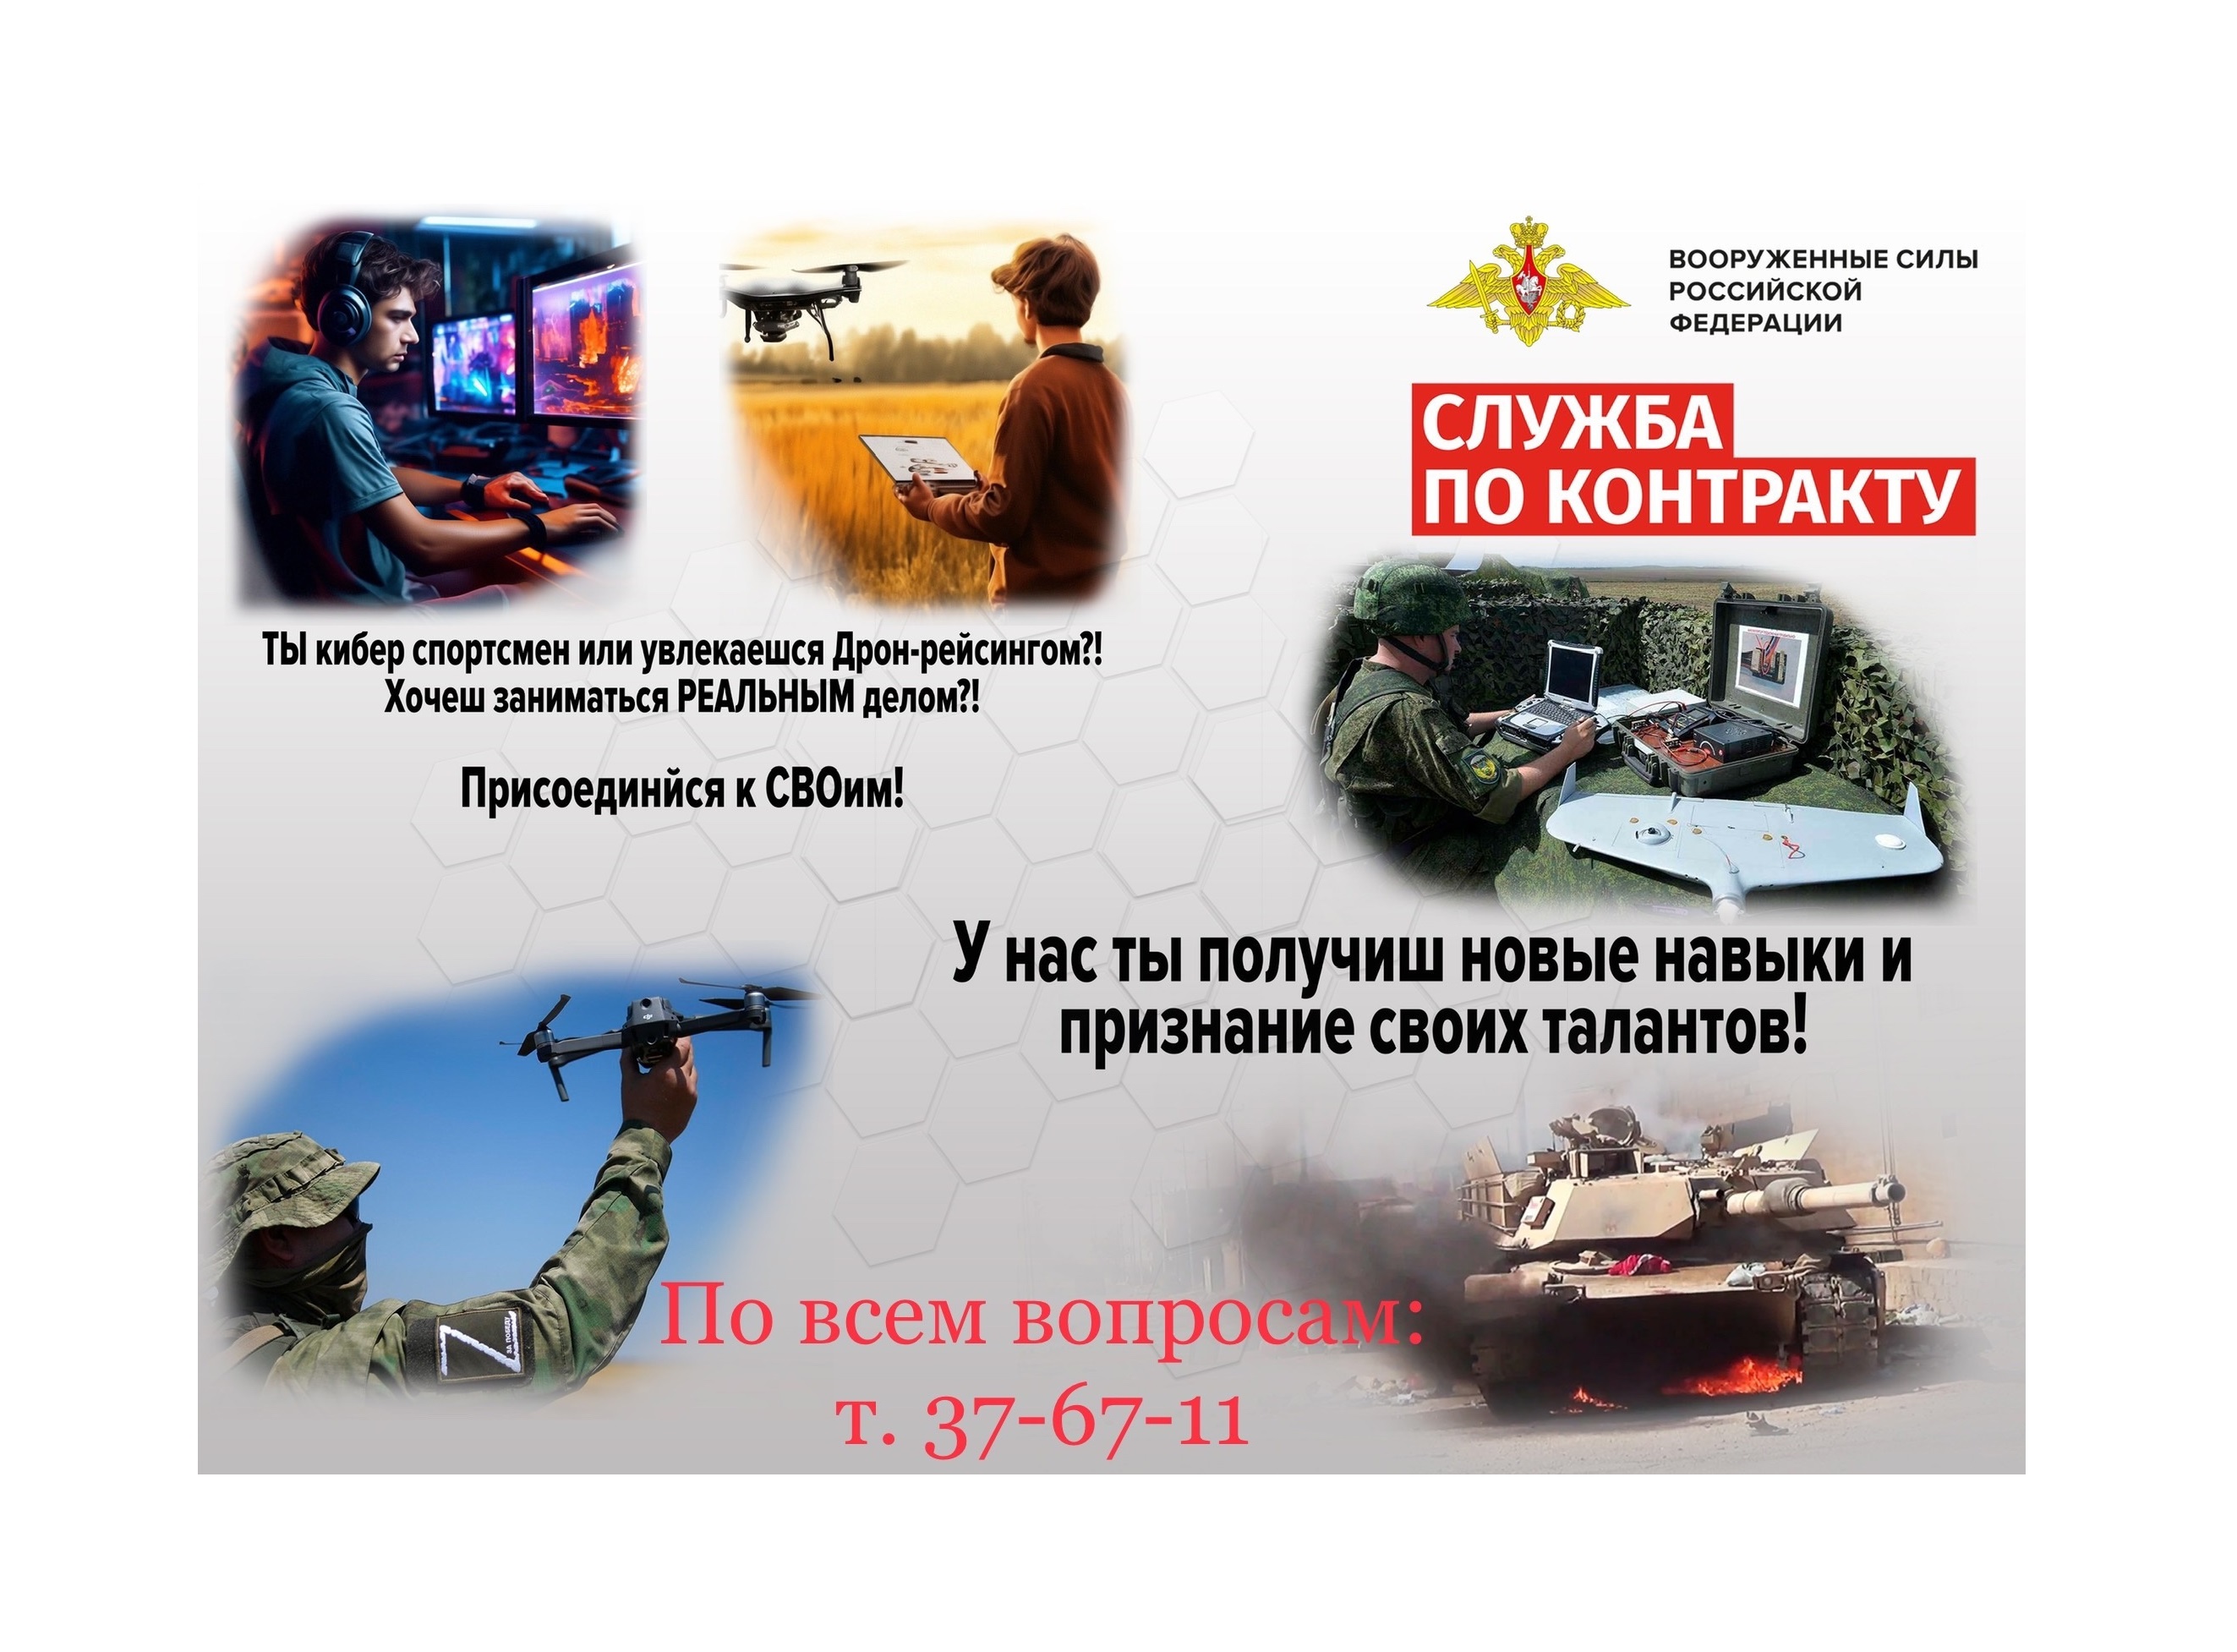 Министерство обороны РФ приглашает на службу по контракту.